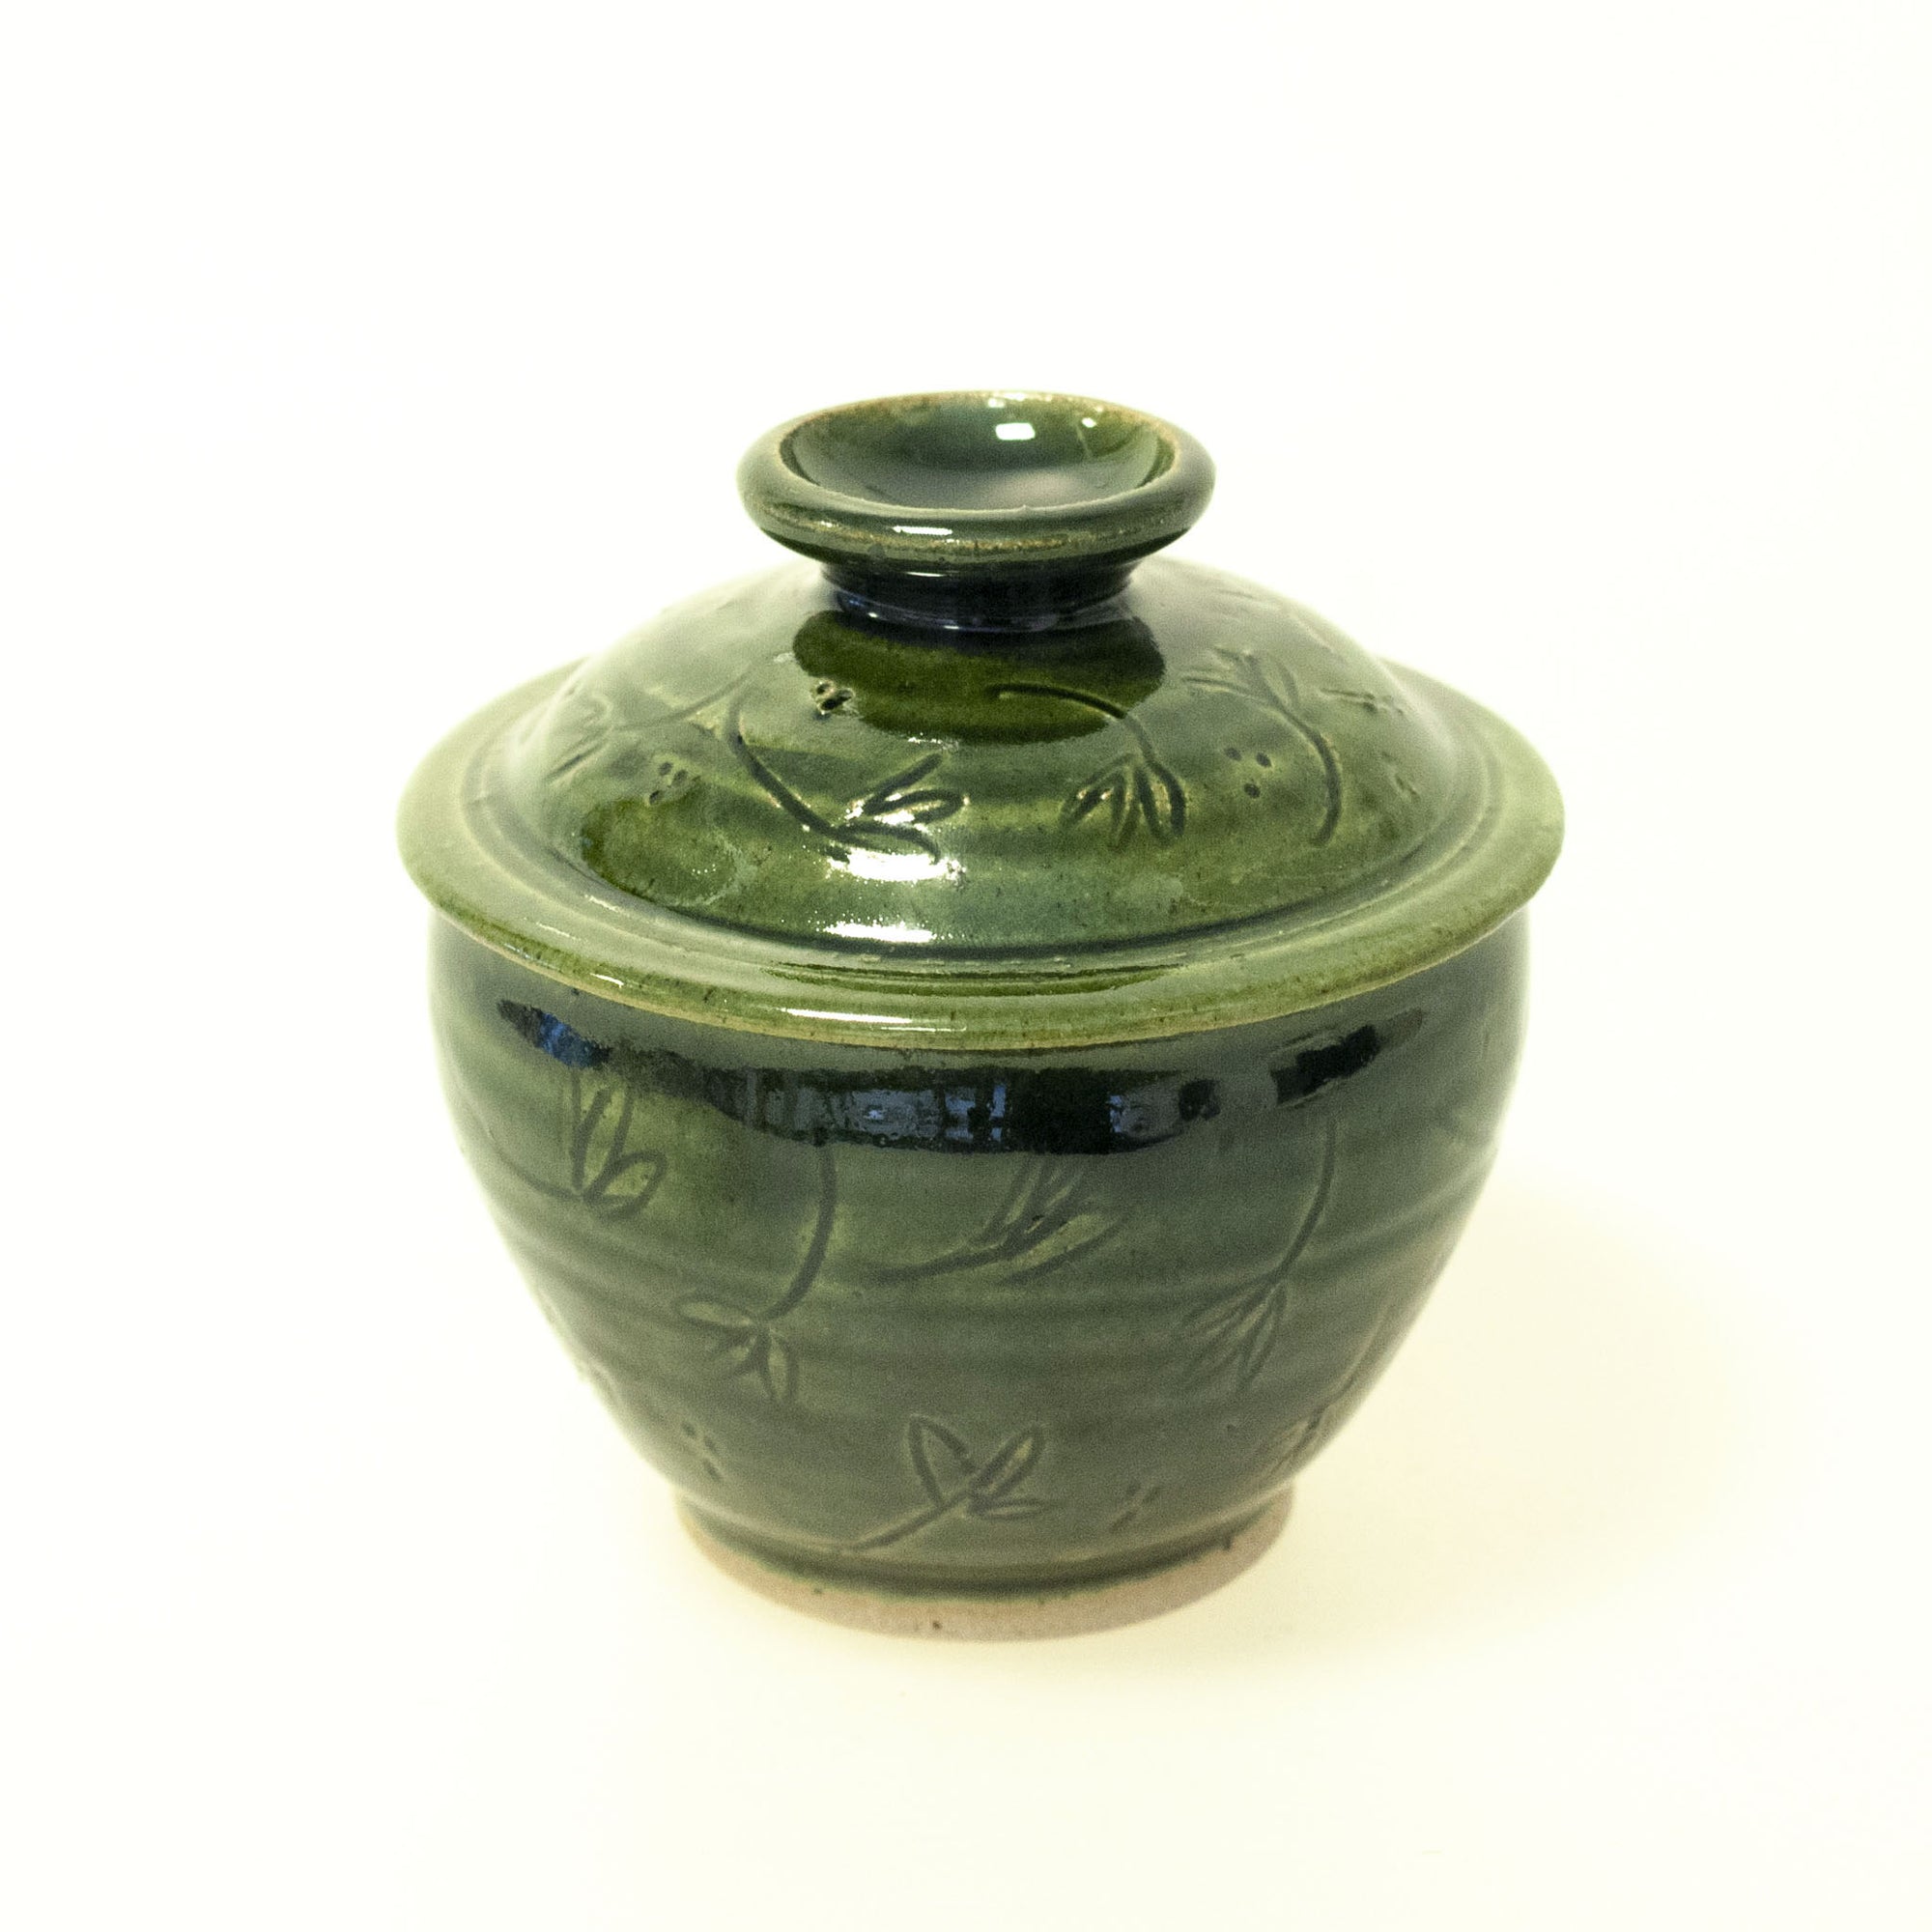 Liv - handdrejad burk med lock i keramik, liten. Grön glasyr